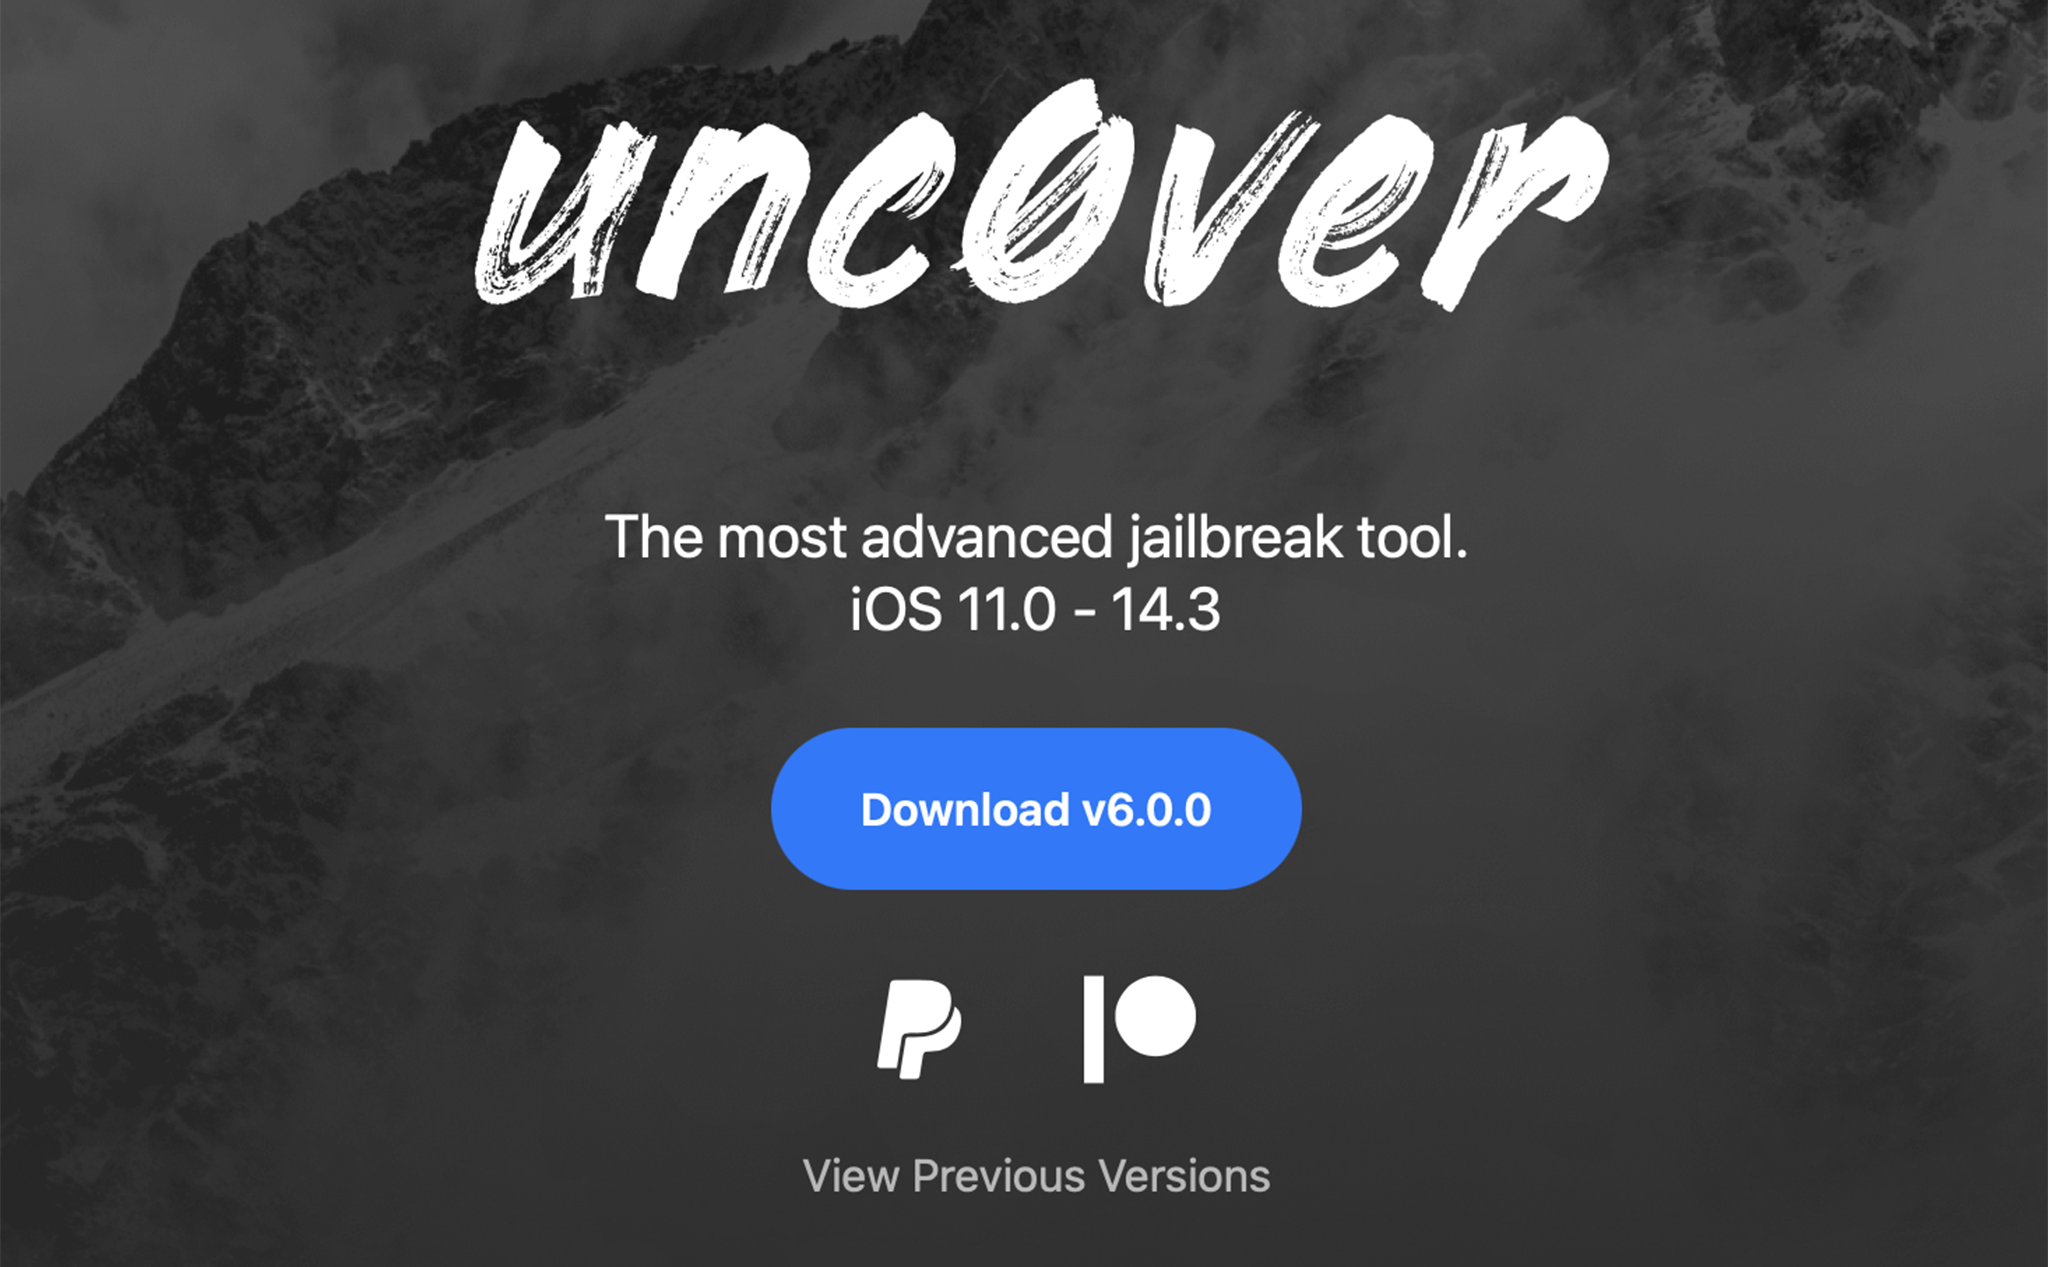 Đã có thể jailbreak iPhone chạy iOS 14